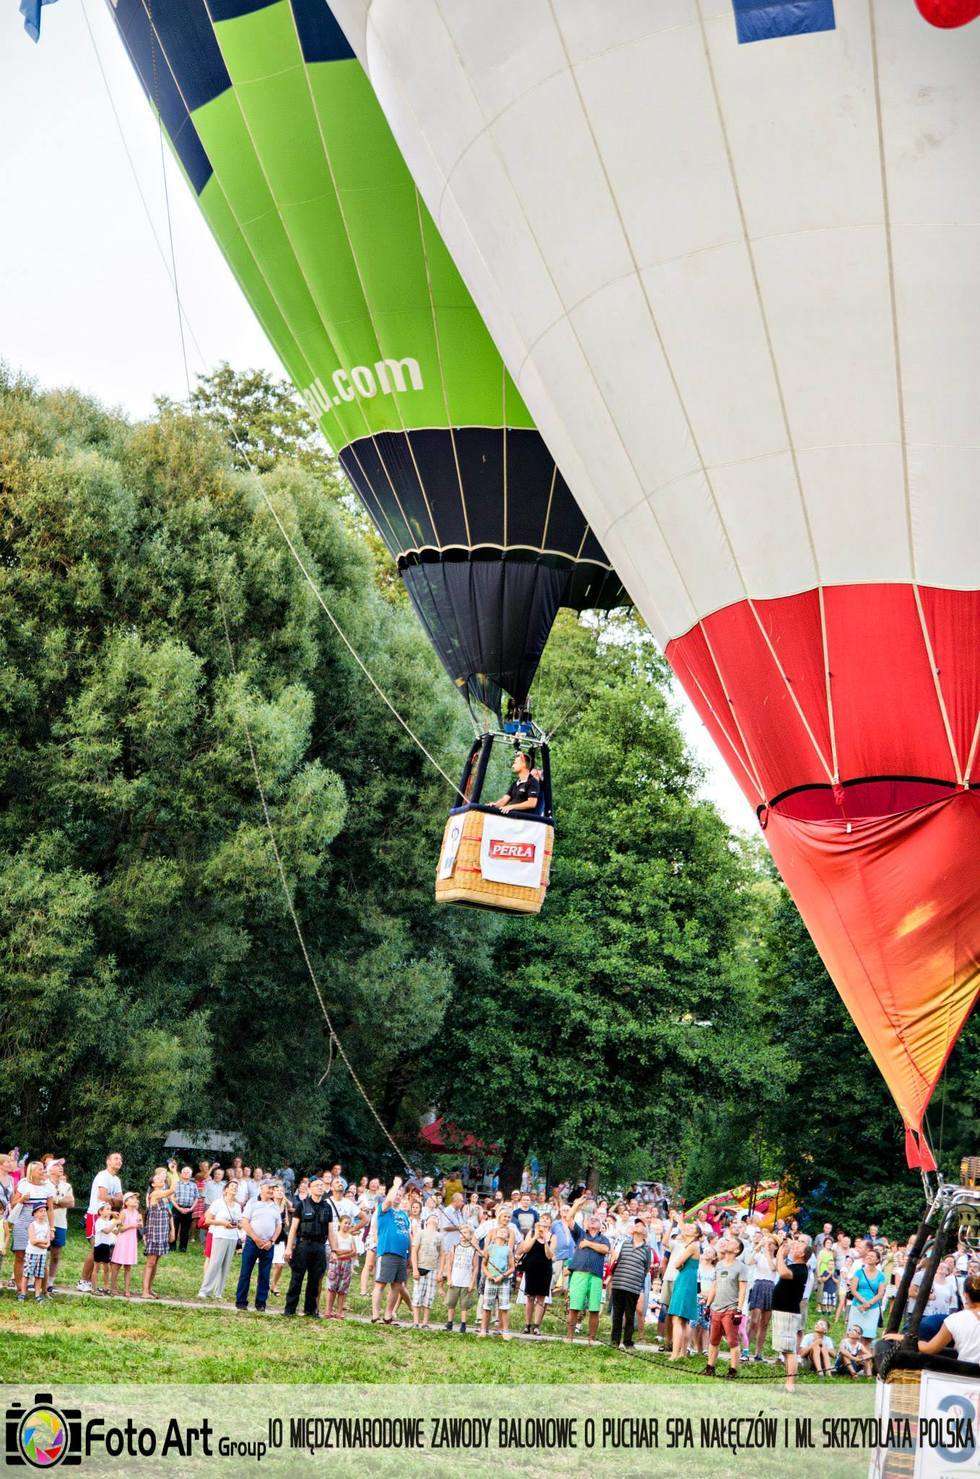  Zawody balonowe w Nałęczowie (zdjęcie 8) - Autor: Foto Art Group